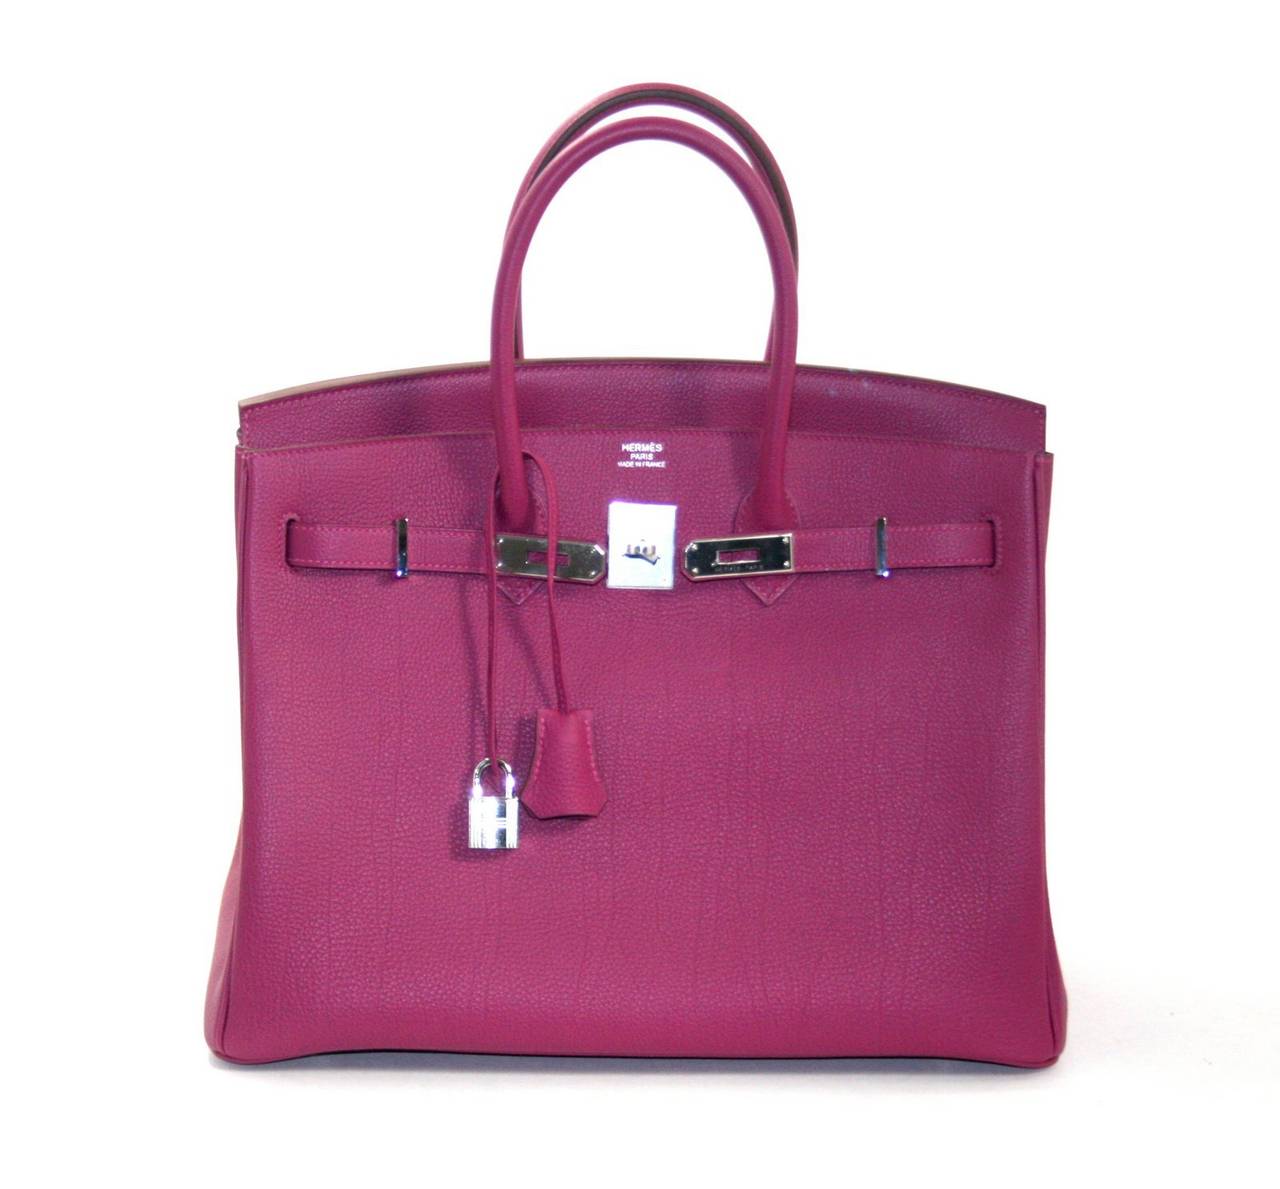 Hermes Birkin Bag in Tosca Pink Togo Leather, 35 cm size 2